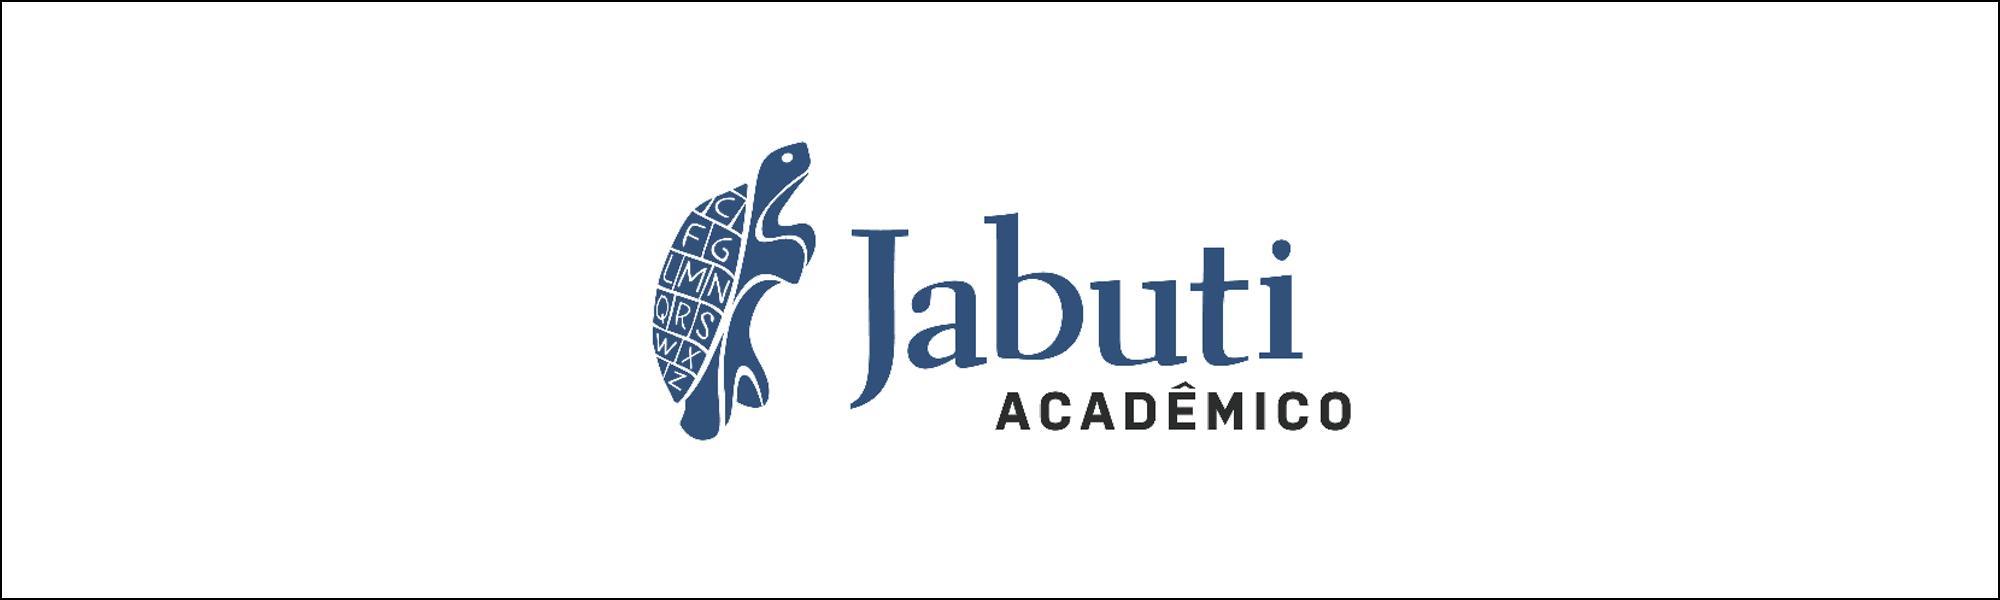 Trabalhos desenvolvidos no IAU ficam entre os semifinalistas do Prêmio Jabuti Acadêmico